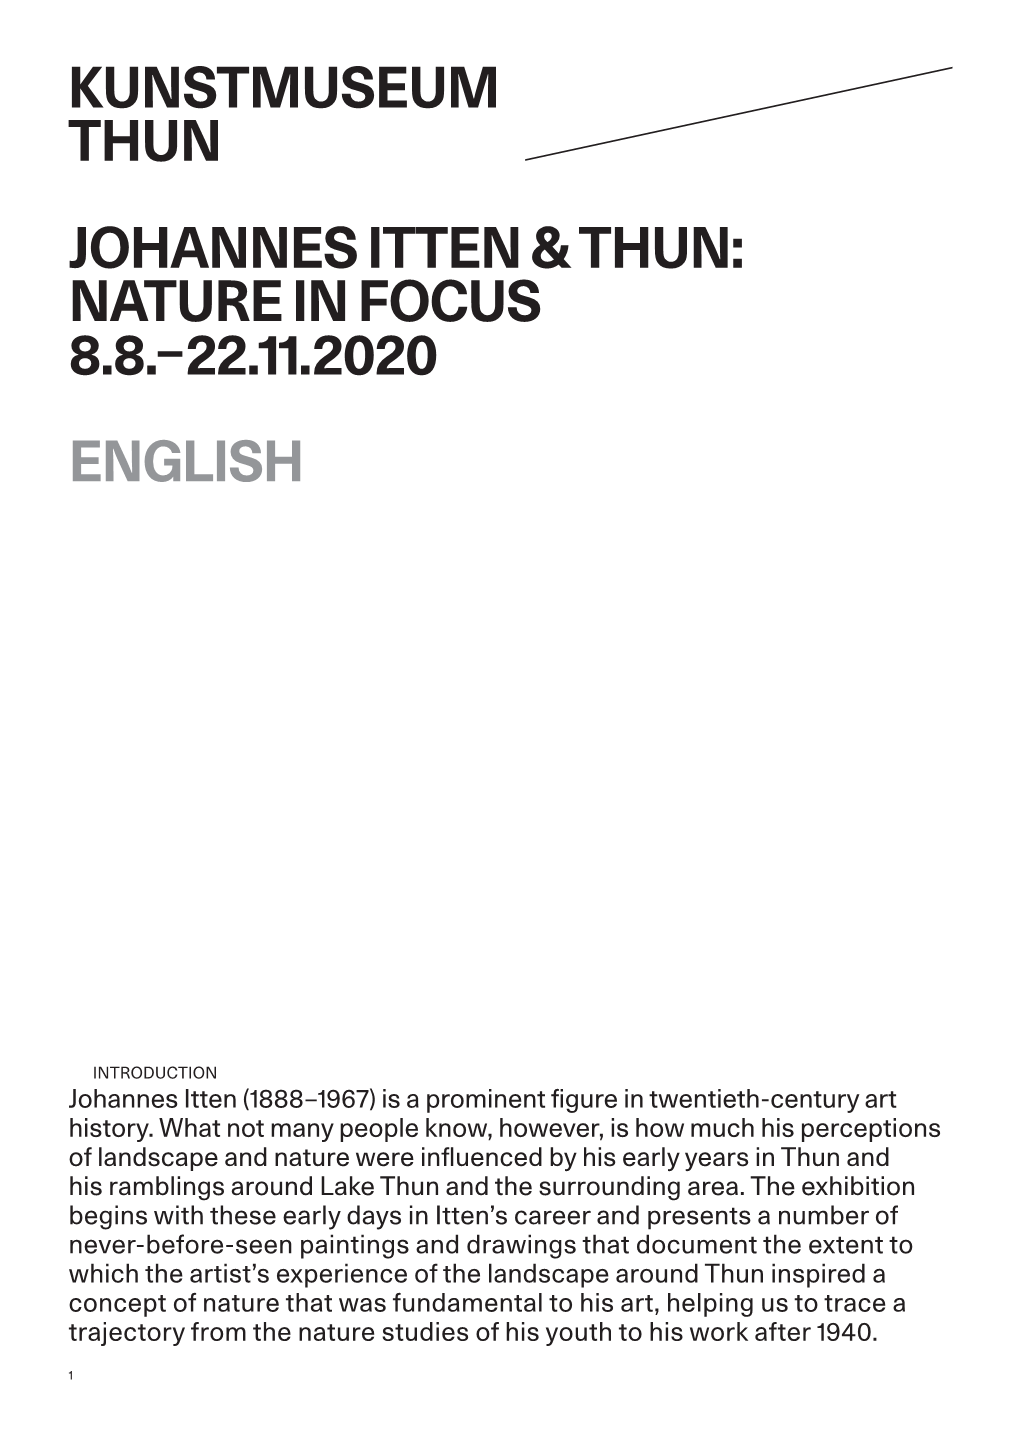 Johannes Itten & Thun: Nature in Focus 8.8